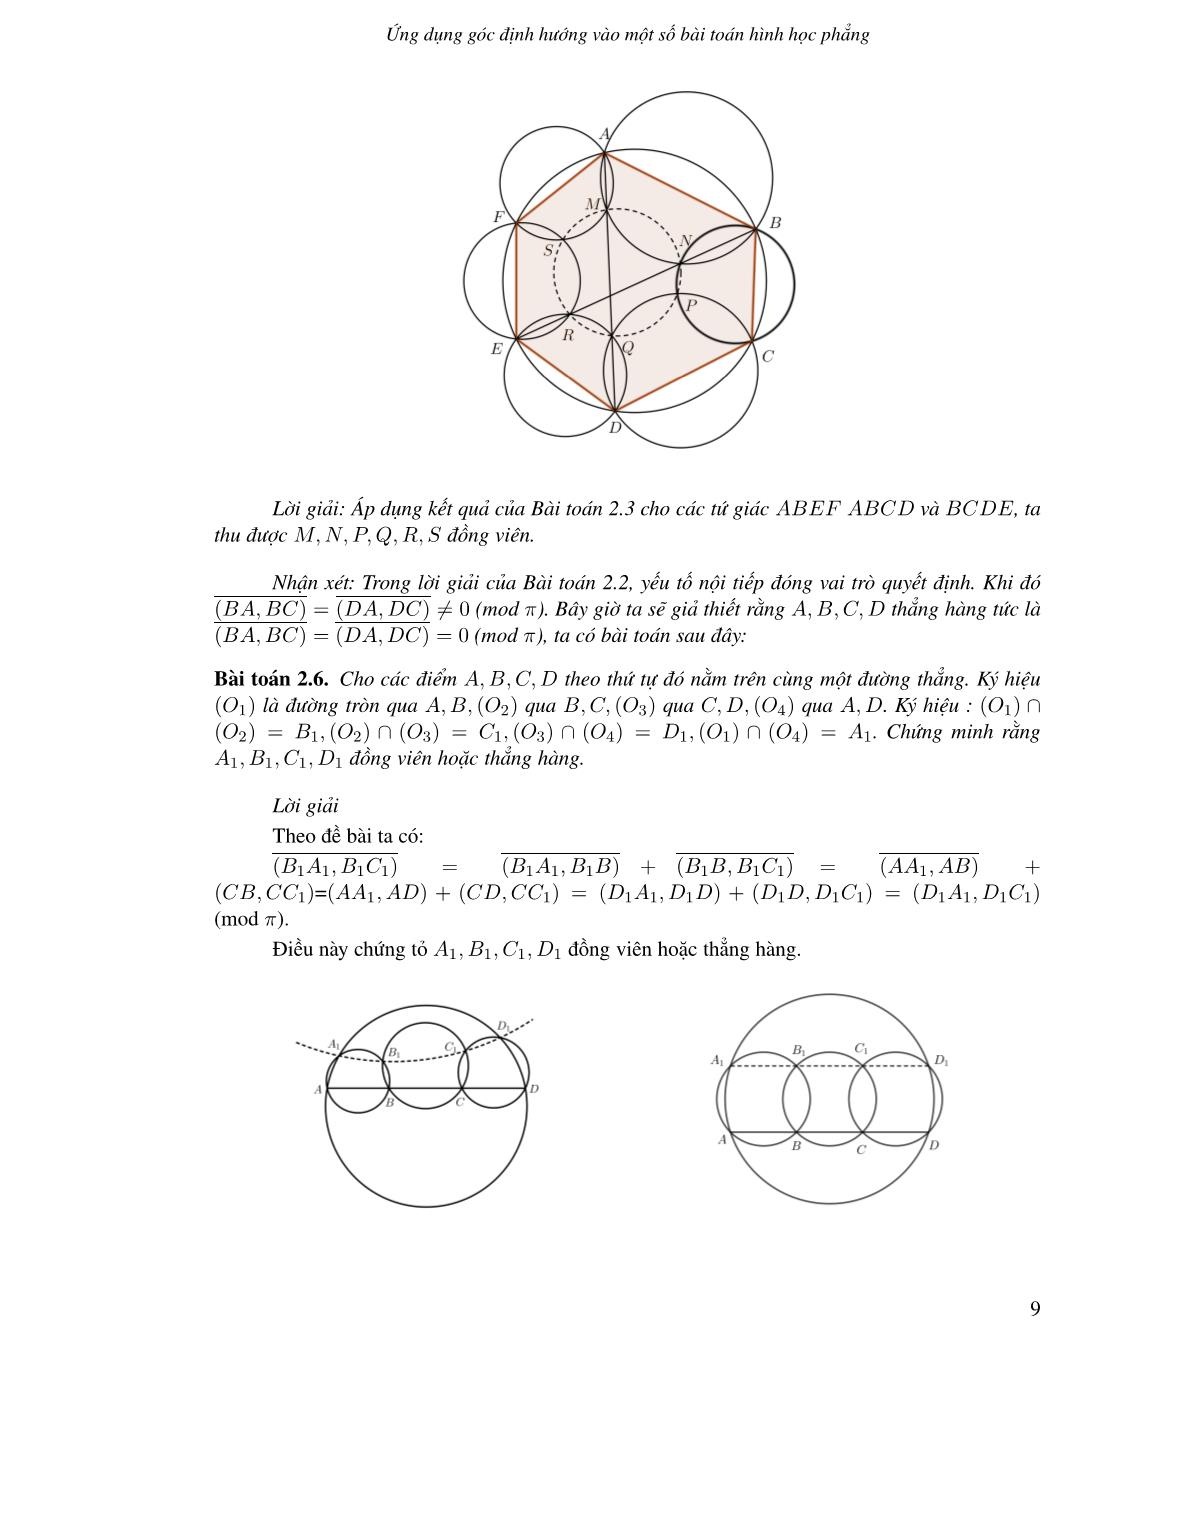 Ứng dụng góc định hướng vào một số bài toán hình học phẳng trang 7